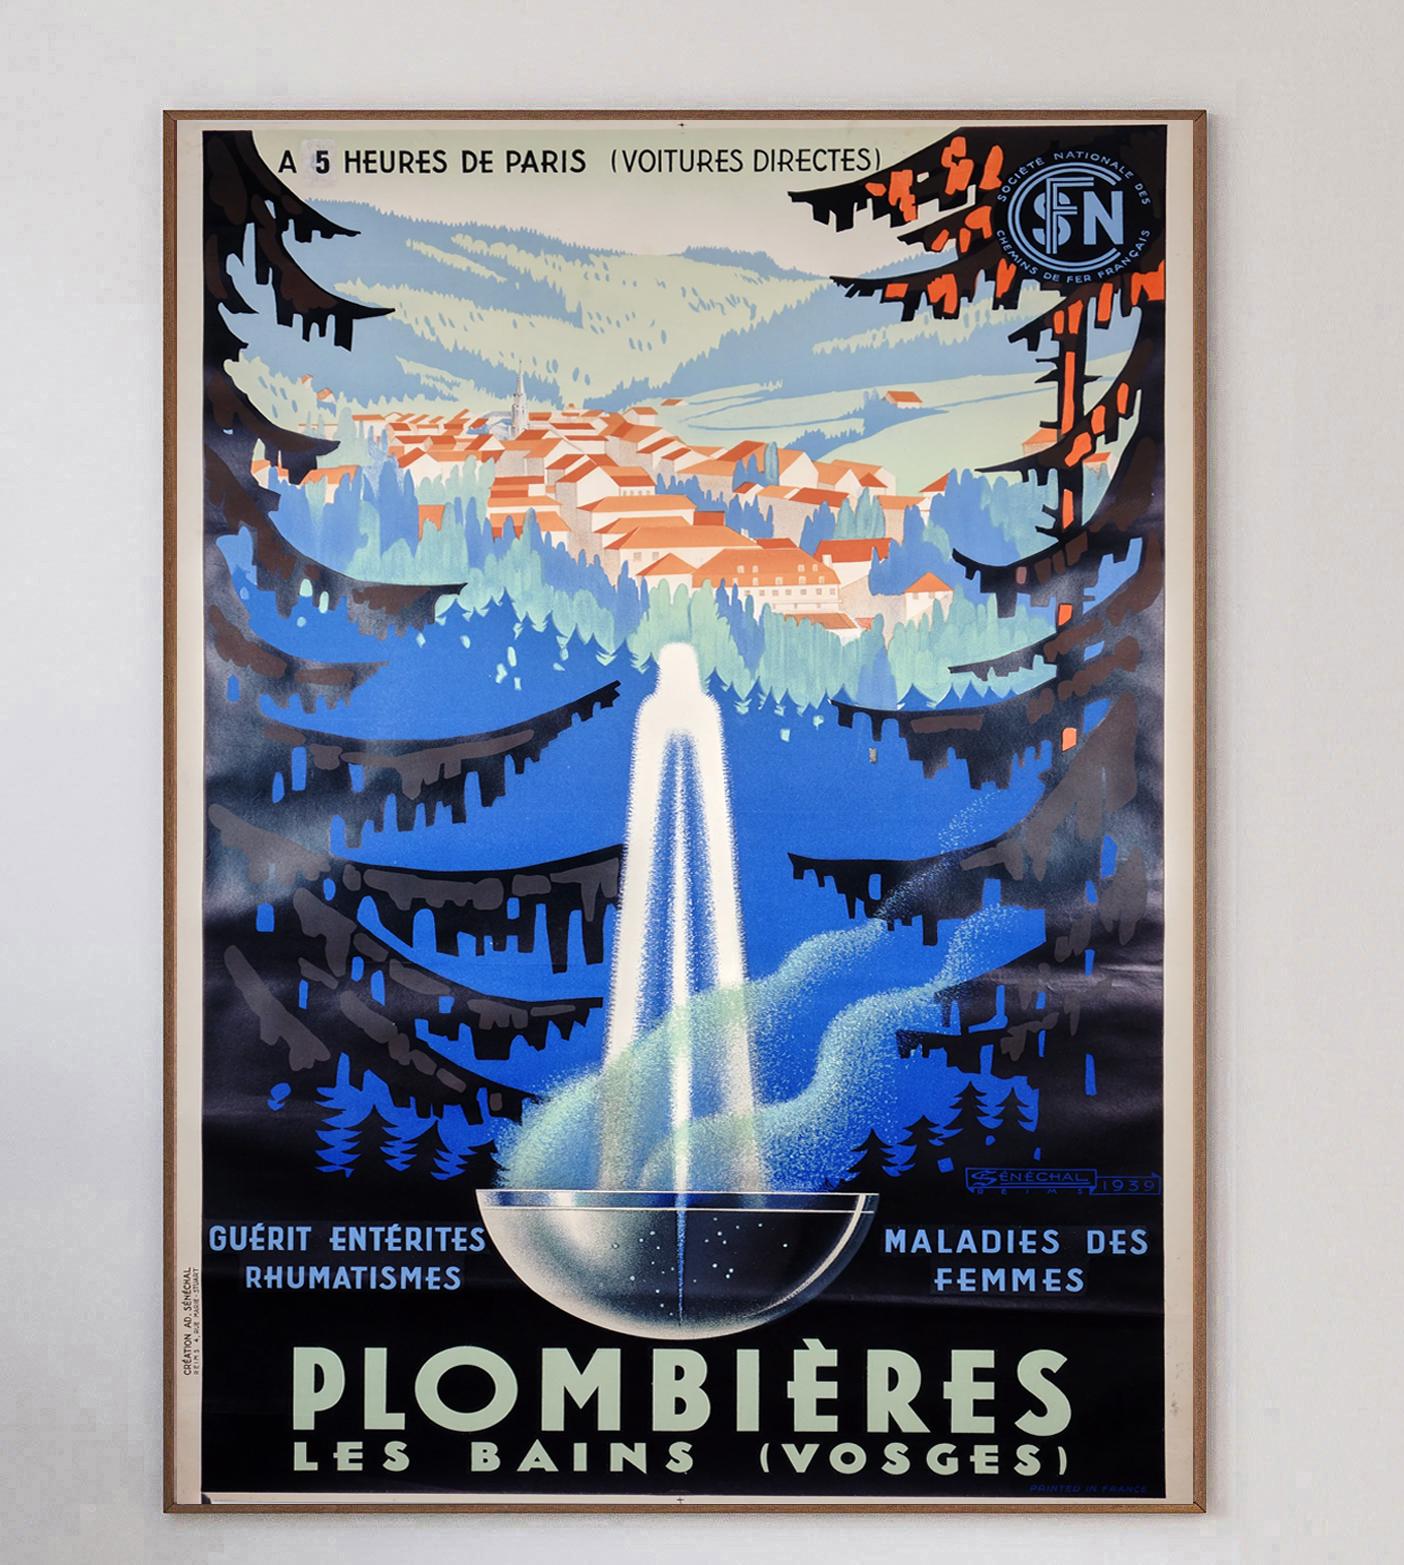 Réalisée par l'artiste français Adrien Senechal, cette belle affiche fait la promotion de la région de Plombières-Les-Bains (Vosges), dans l'est de la France. La région, Famed pour ses bains chauds naturels, était populaire auprès des visiteurs de